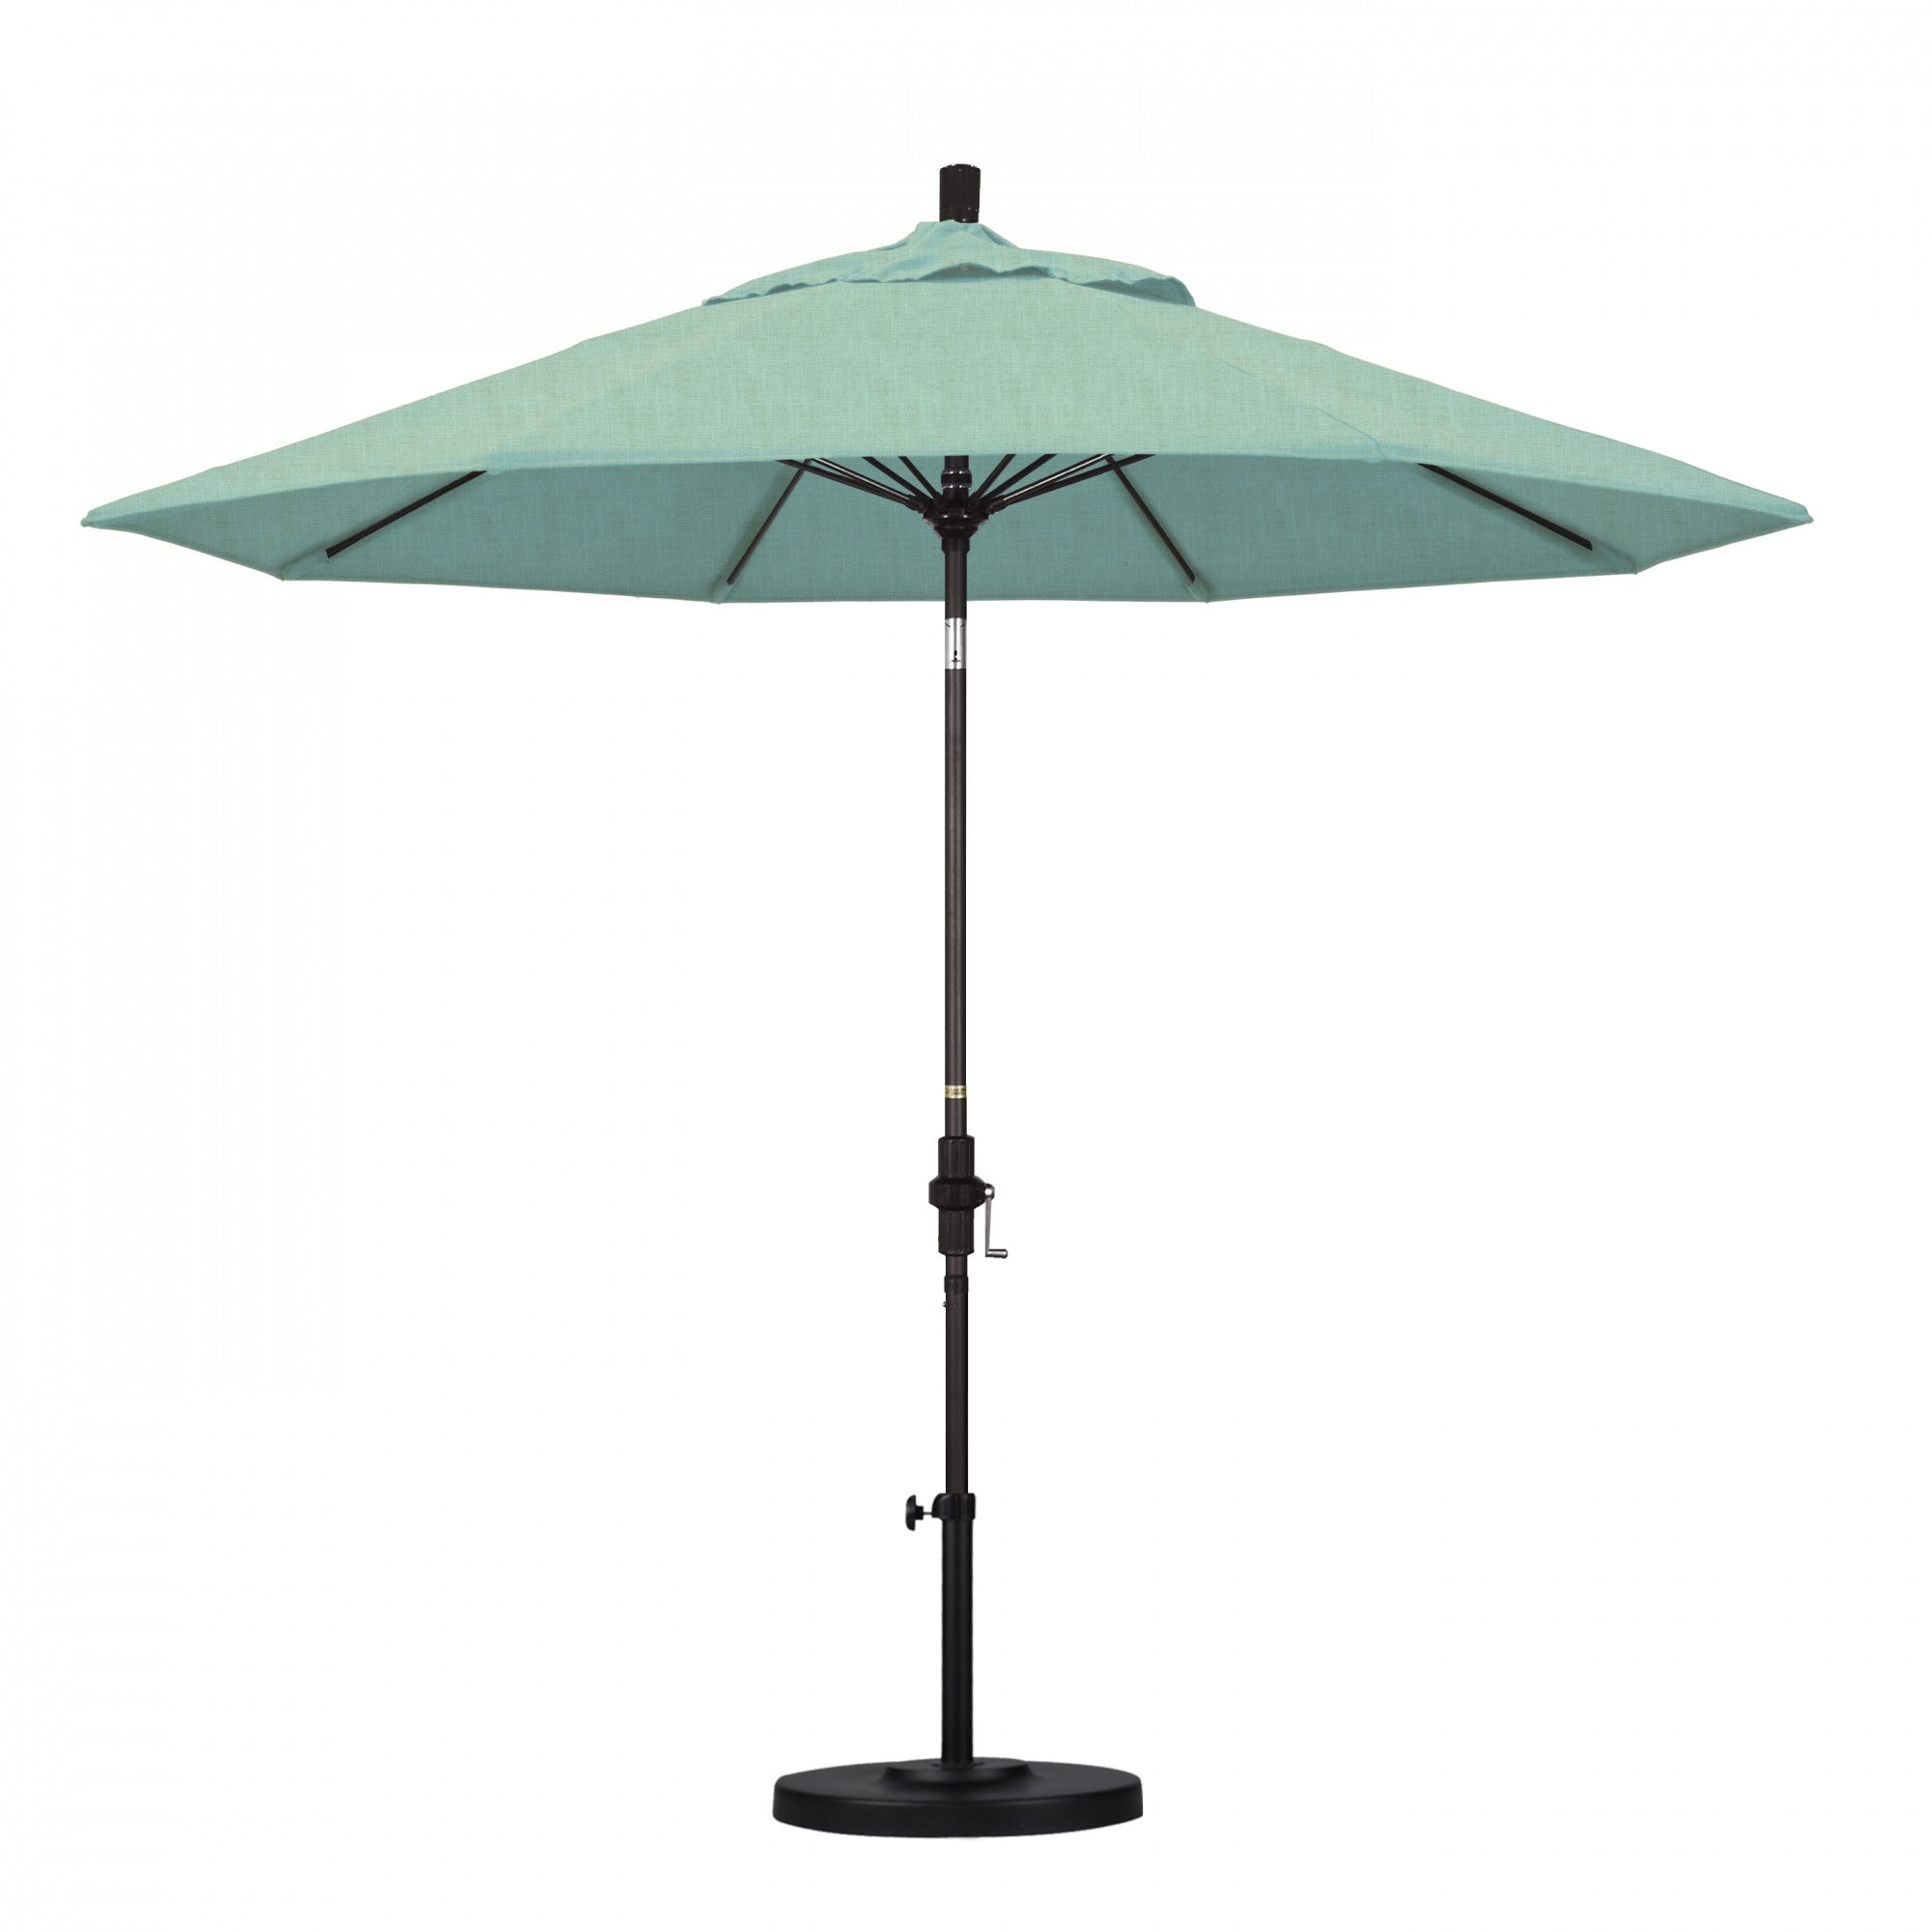 California Umbrella - 9' - Patio Umbrella Umbrella - Aluminum Pole - Spectrum Mist - Sunbrella  - GSCUF908117-48020